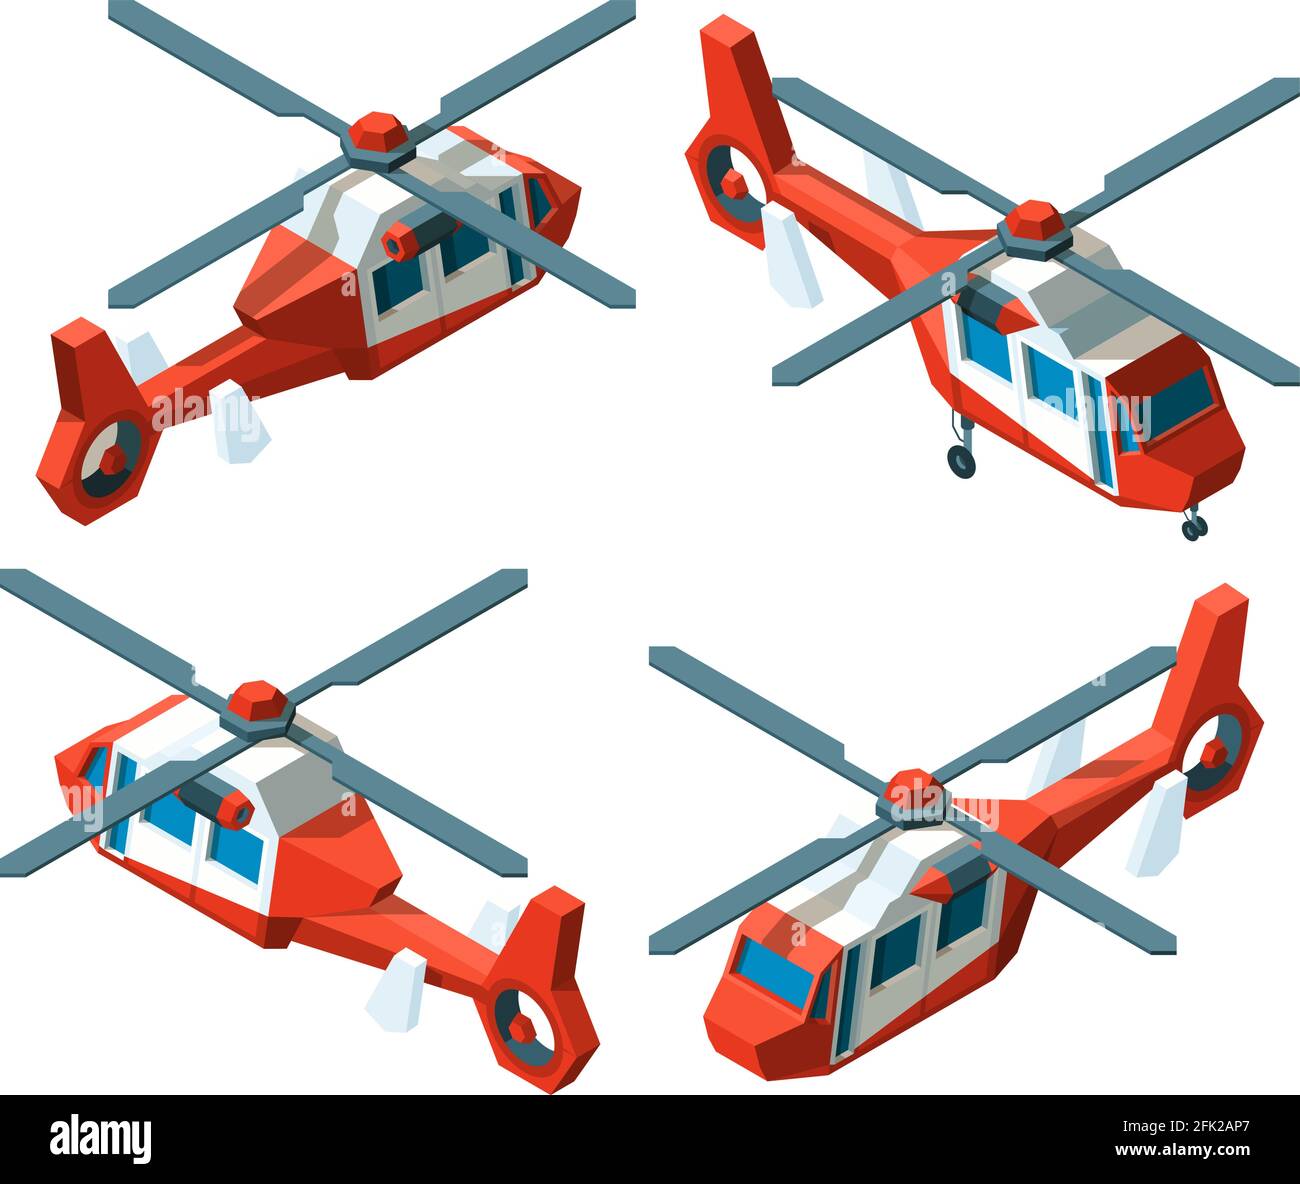 Elicottero isometrico. La Poly-avia bassa trasporta la raccolta vettoriale di viste a punti differenti Illustrazione Vettoriale